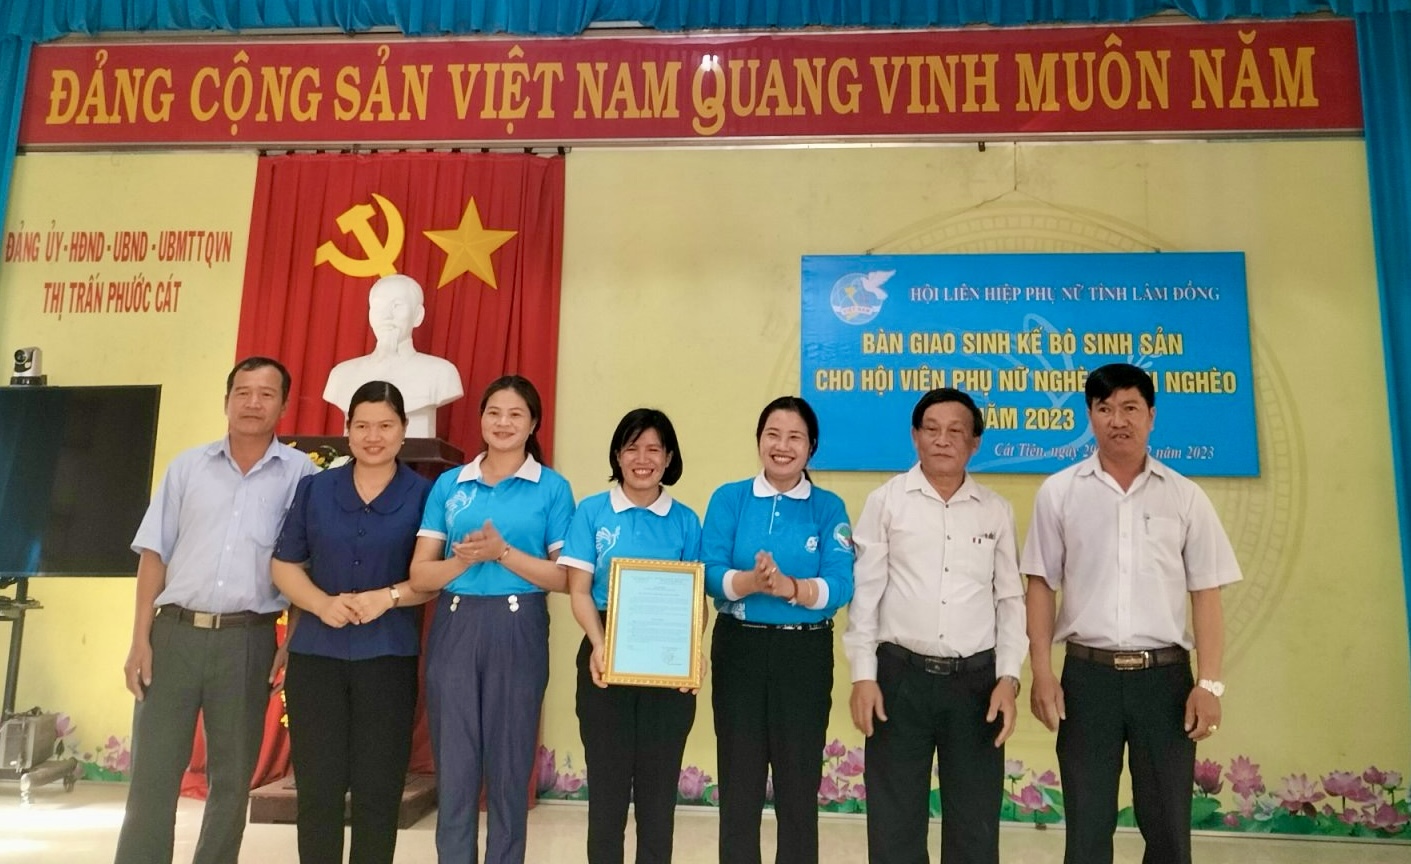 Bà Phạm Thị Ánh Tuyết – Chủ tịch Hội LHPN tỉnh trao quyết định hỗ trợ sinh kế bò sinh sản cho Hội LHPN huyện Cát Tiên 